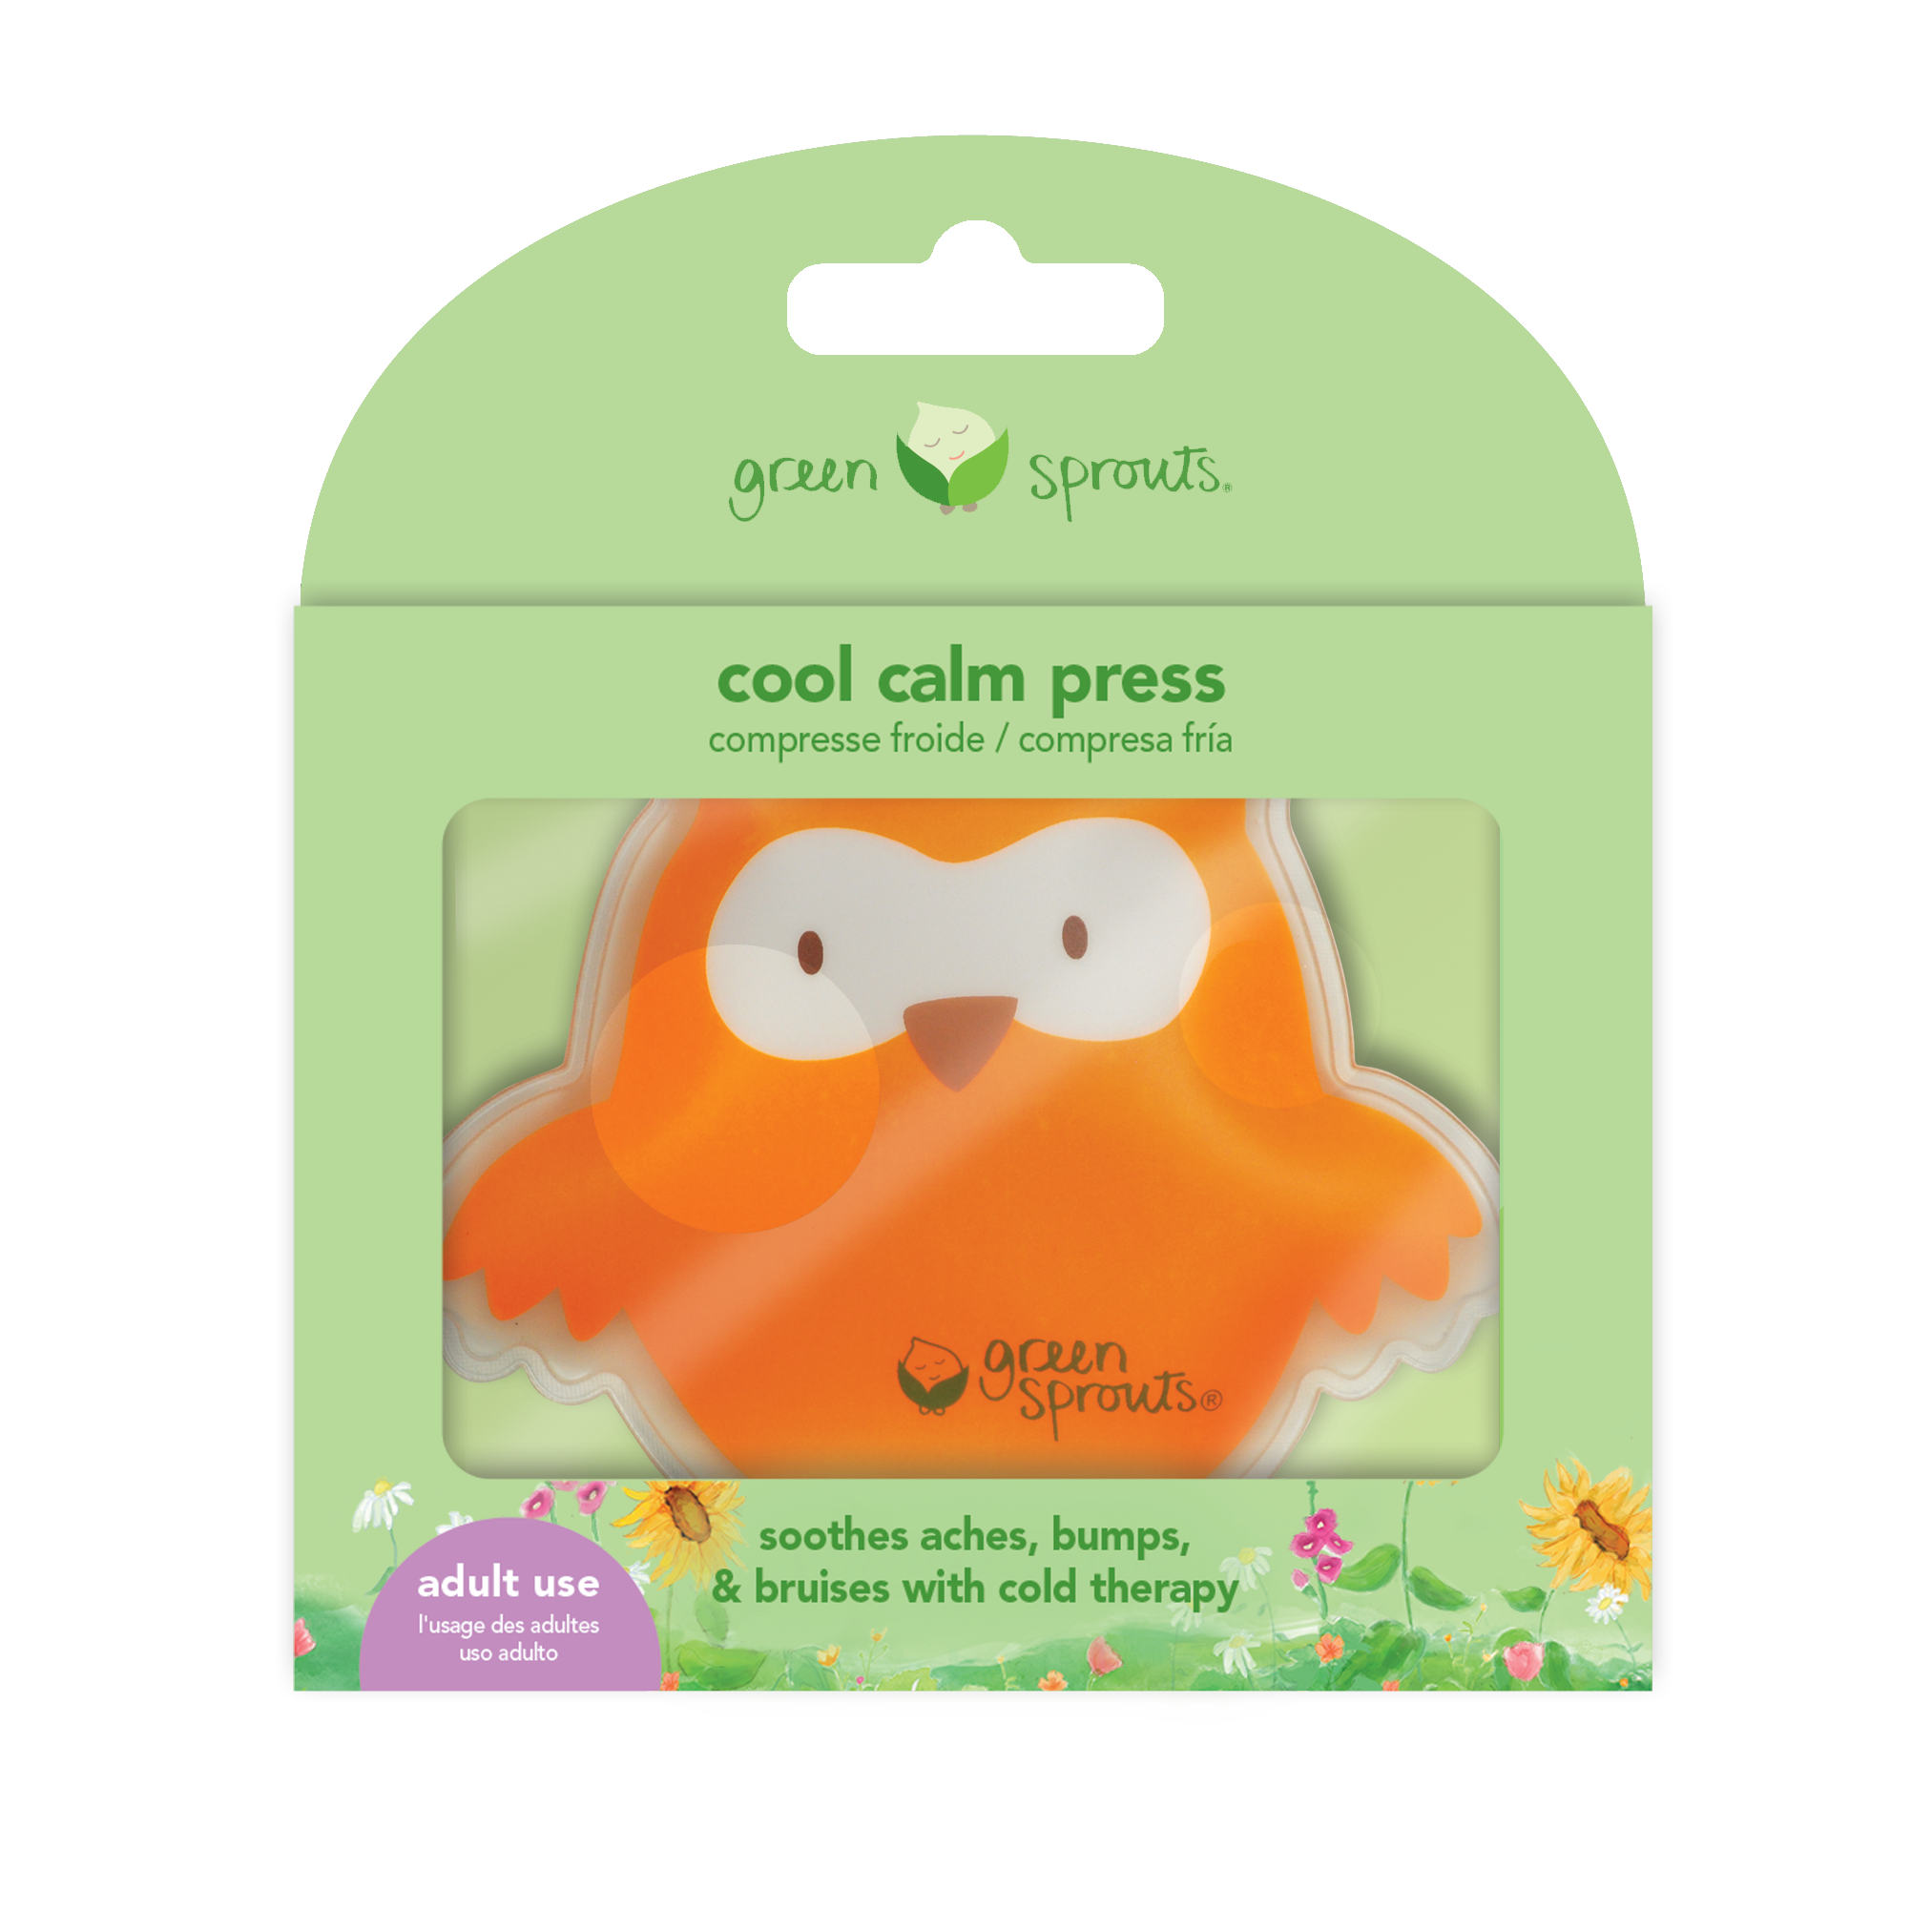 Cool Calm Press